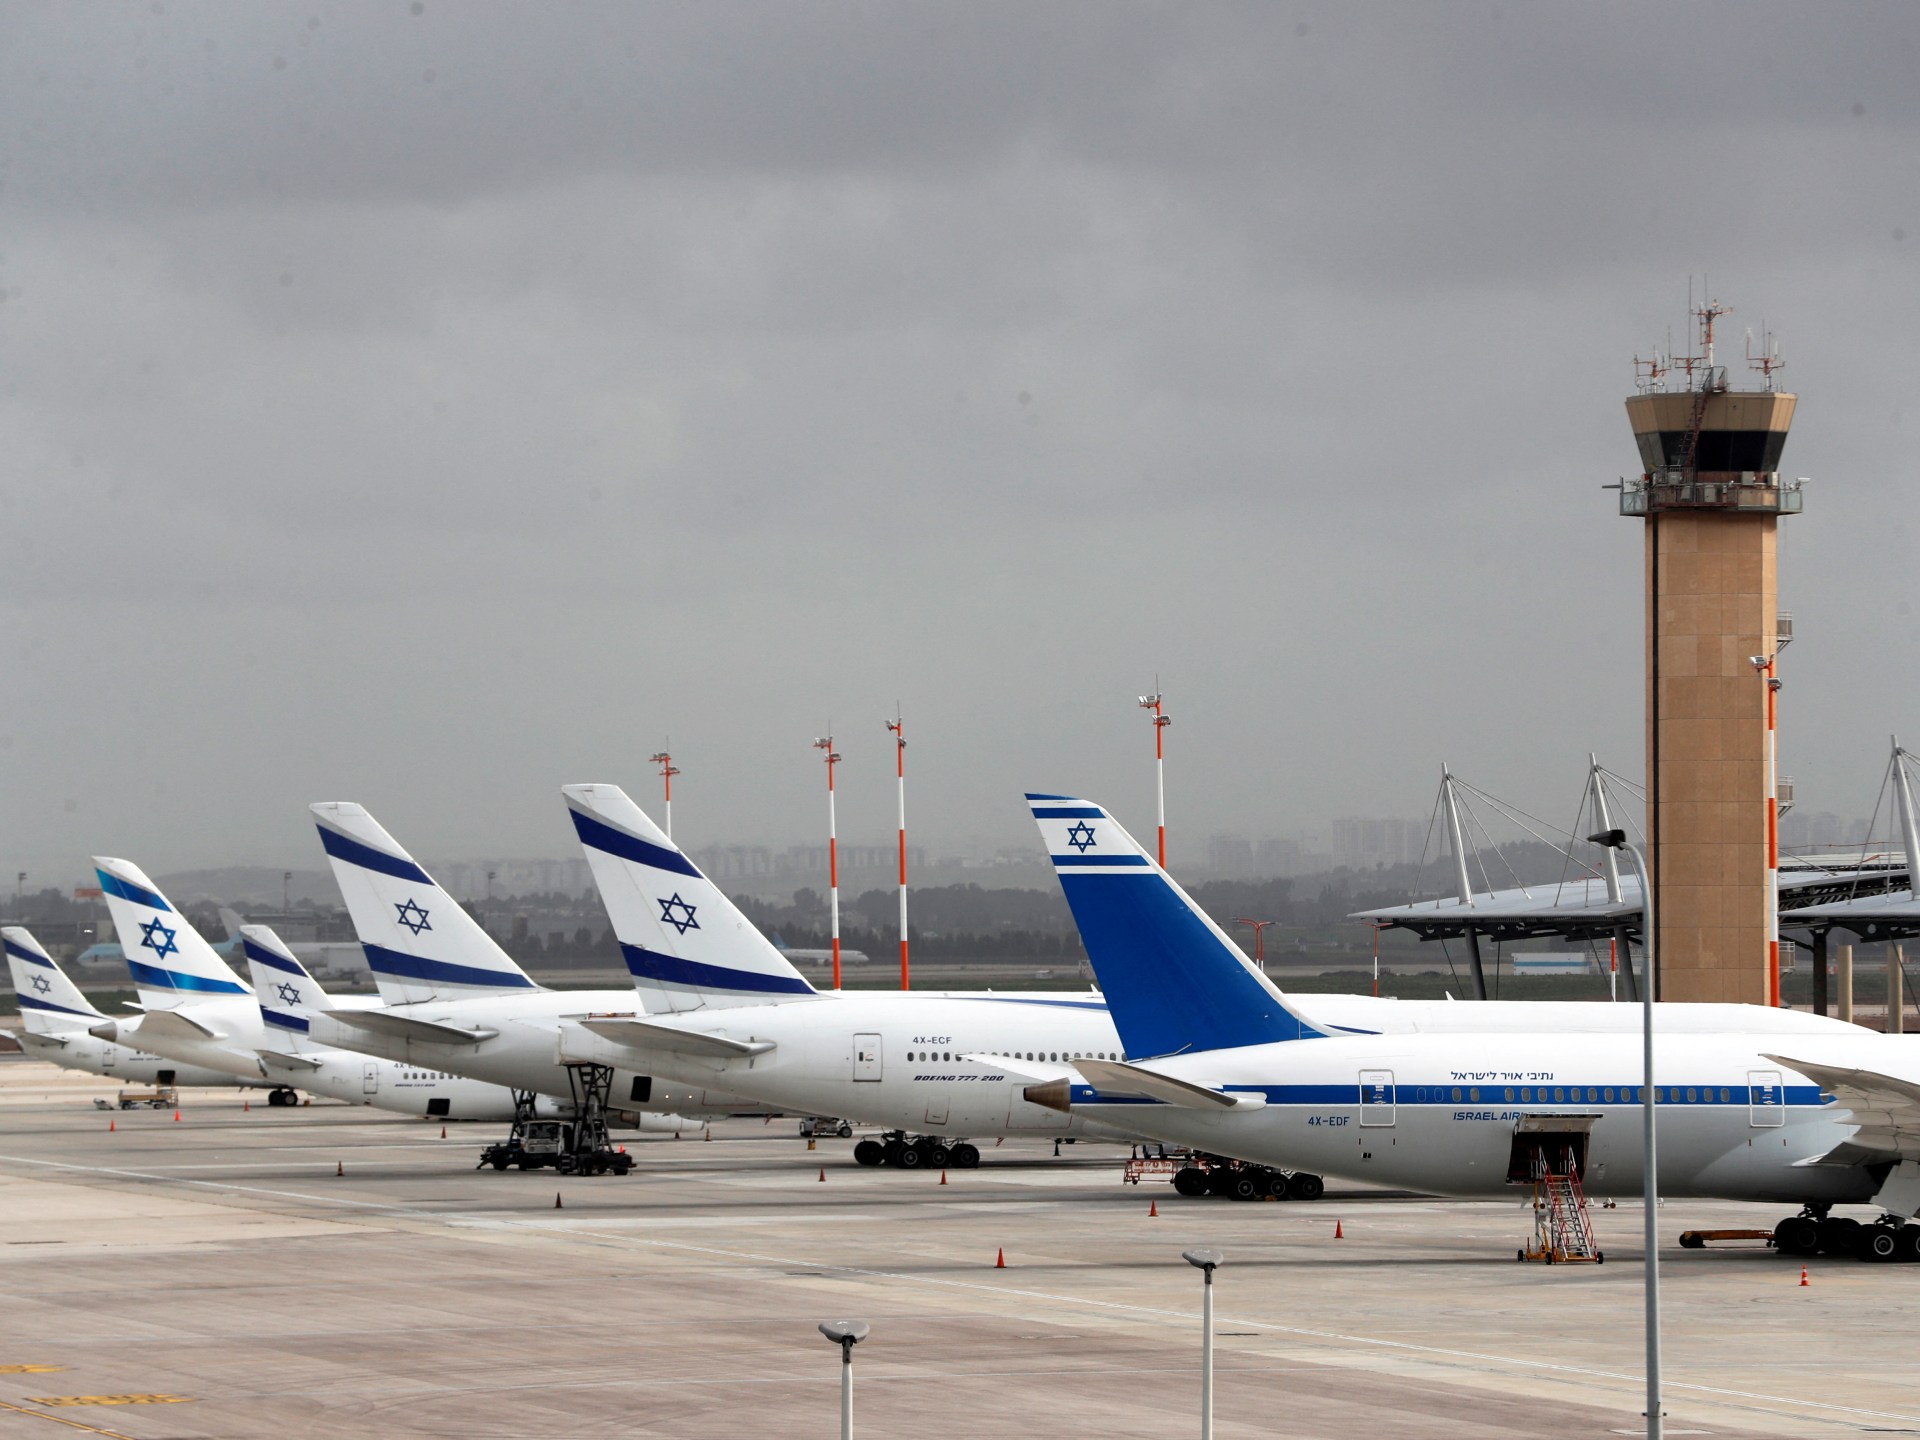 إلغاء الغطاء التأميني على الطيران في إسرائيل | اقتصاد – البوكس نيوز